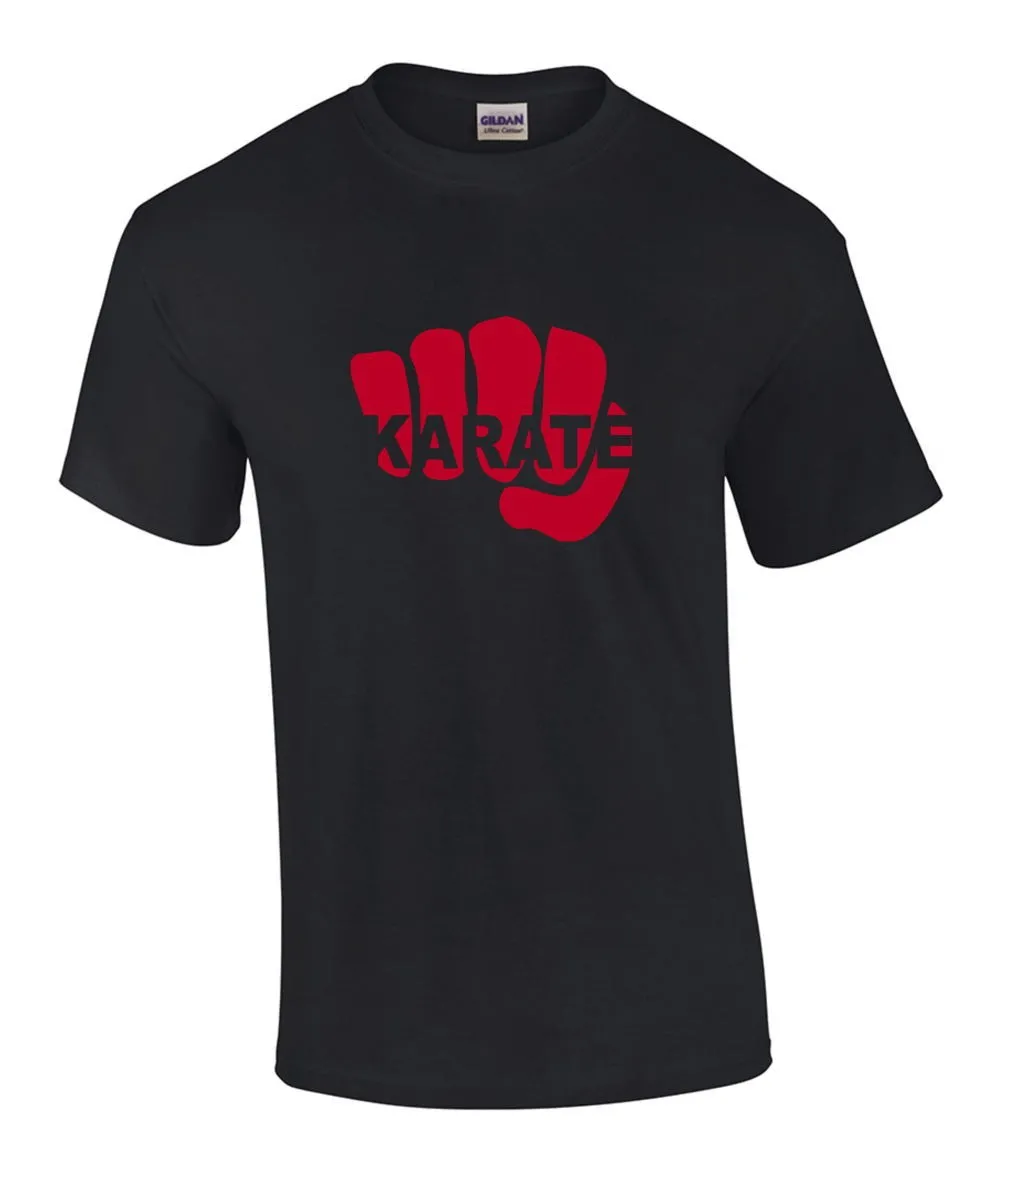 T-Shirt Karate Fist black